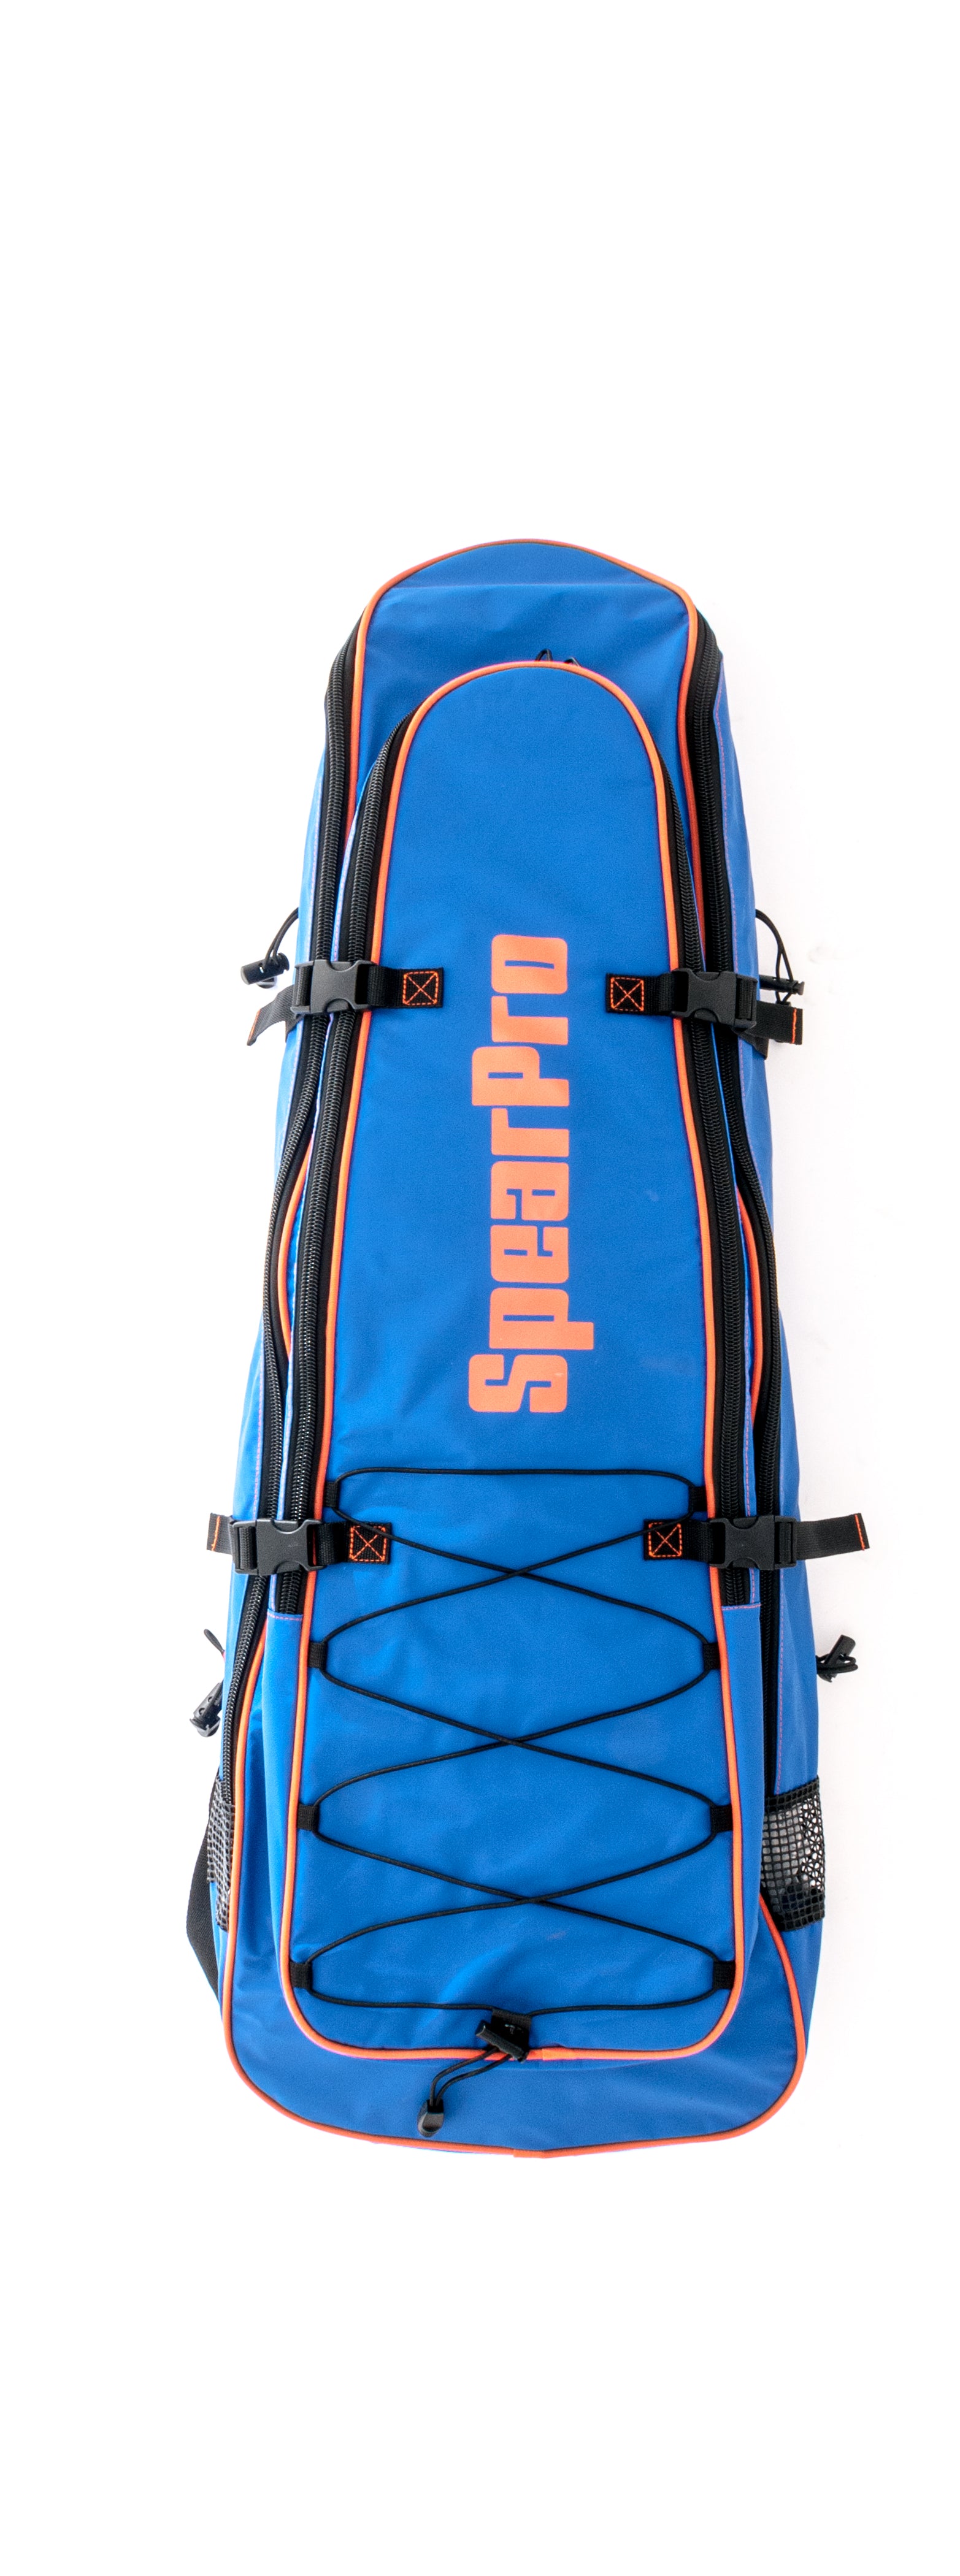 SpearPro Deluxe fin backpack 44 - Spear America